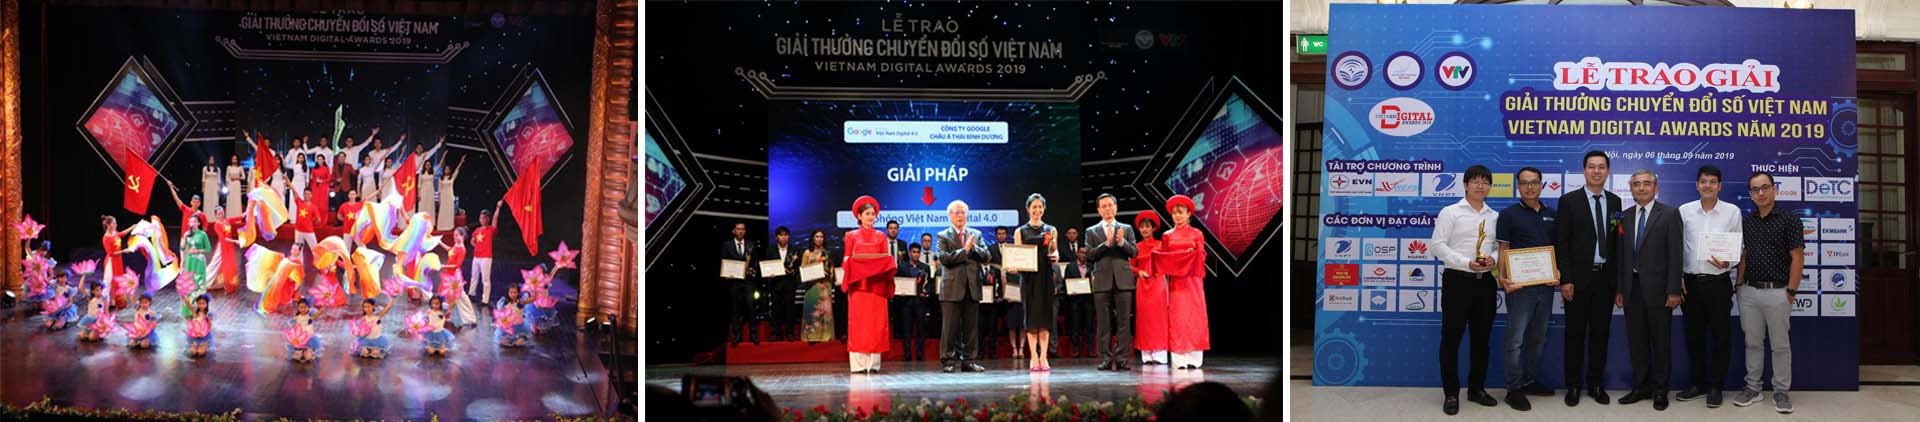 Giải thưởng chuyển đổi số Việt Nam - Cổ vũ tinh thần truyển đổi số quốc gia - Ảnh 9.